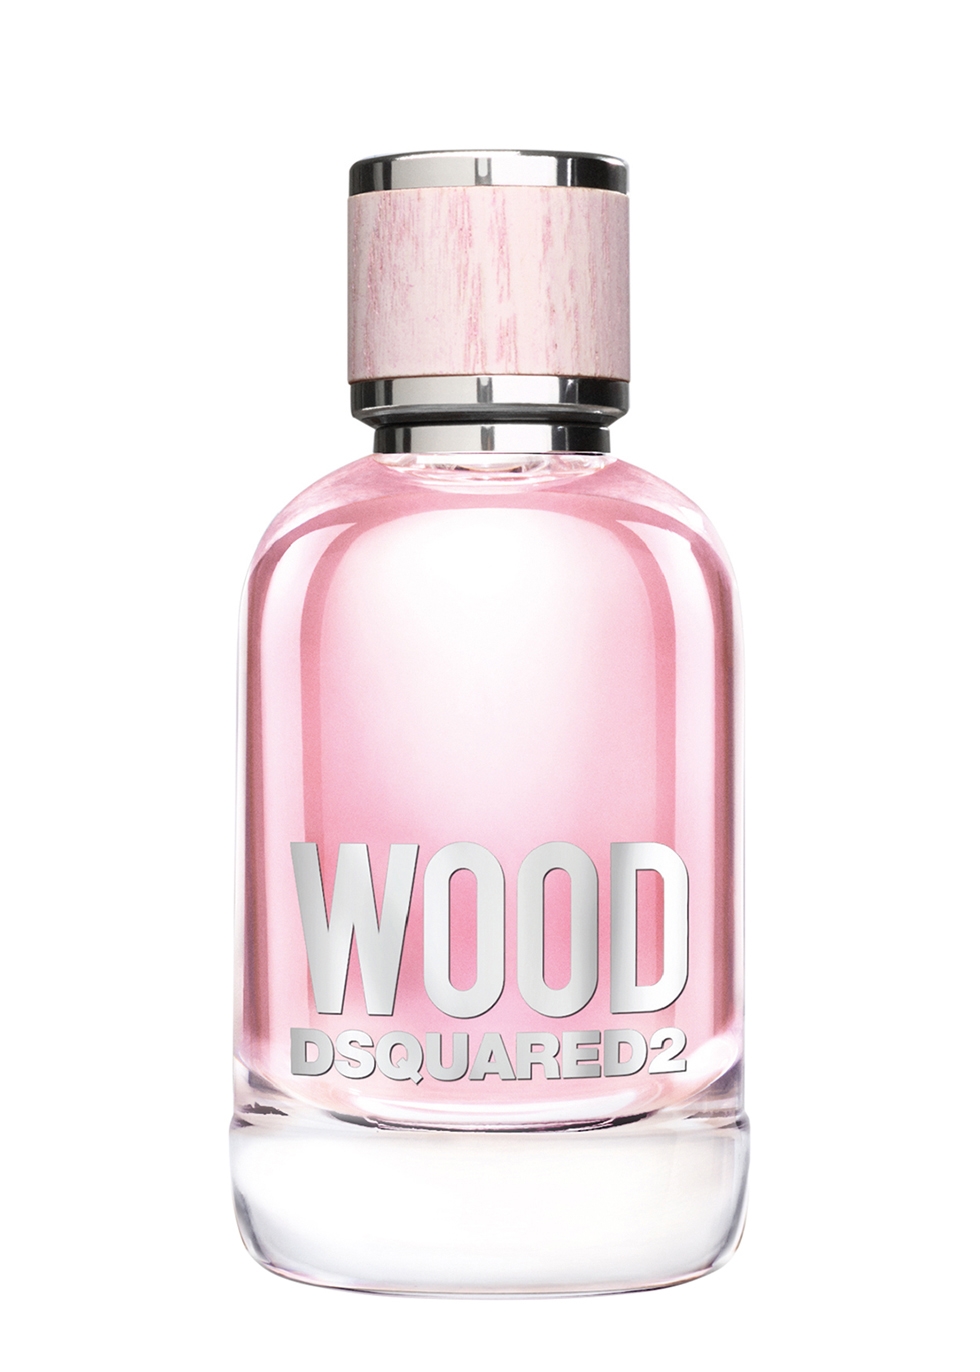 wood dsquared 100ml